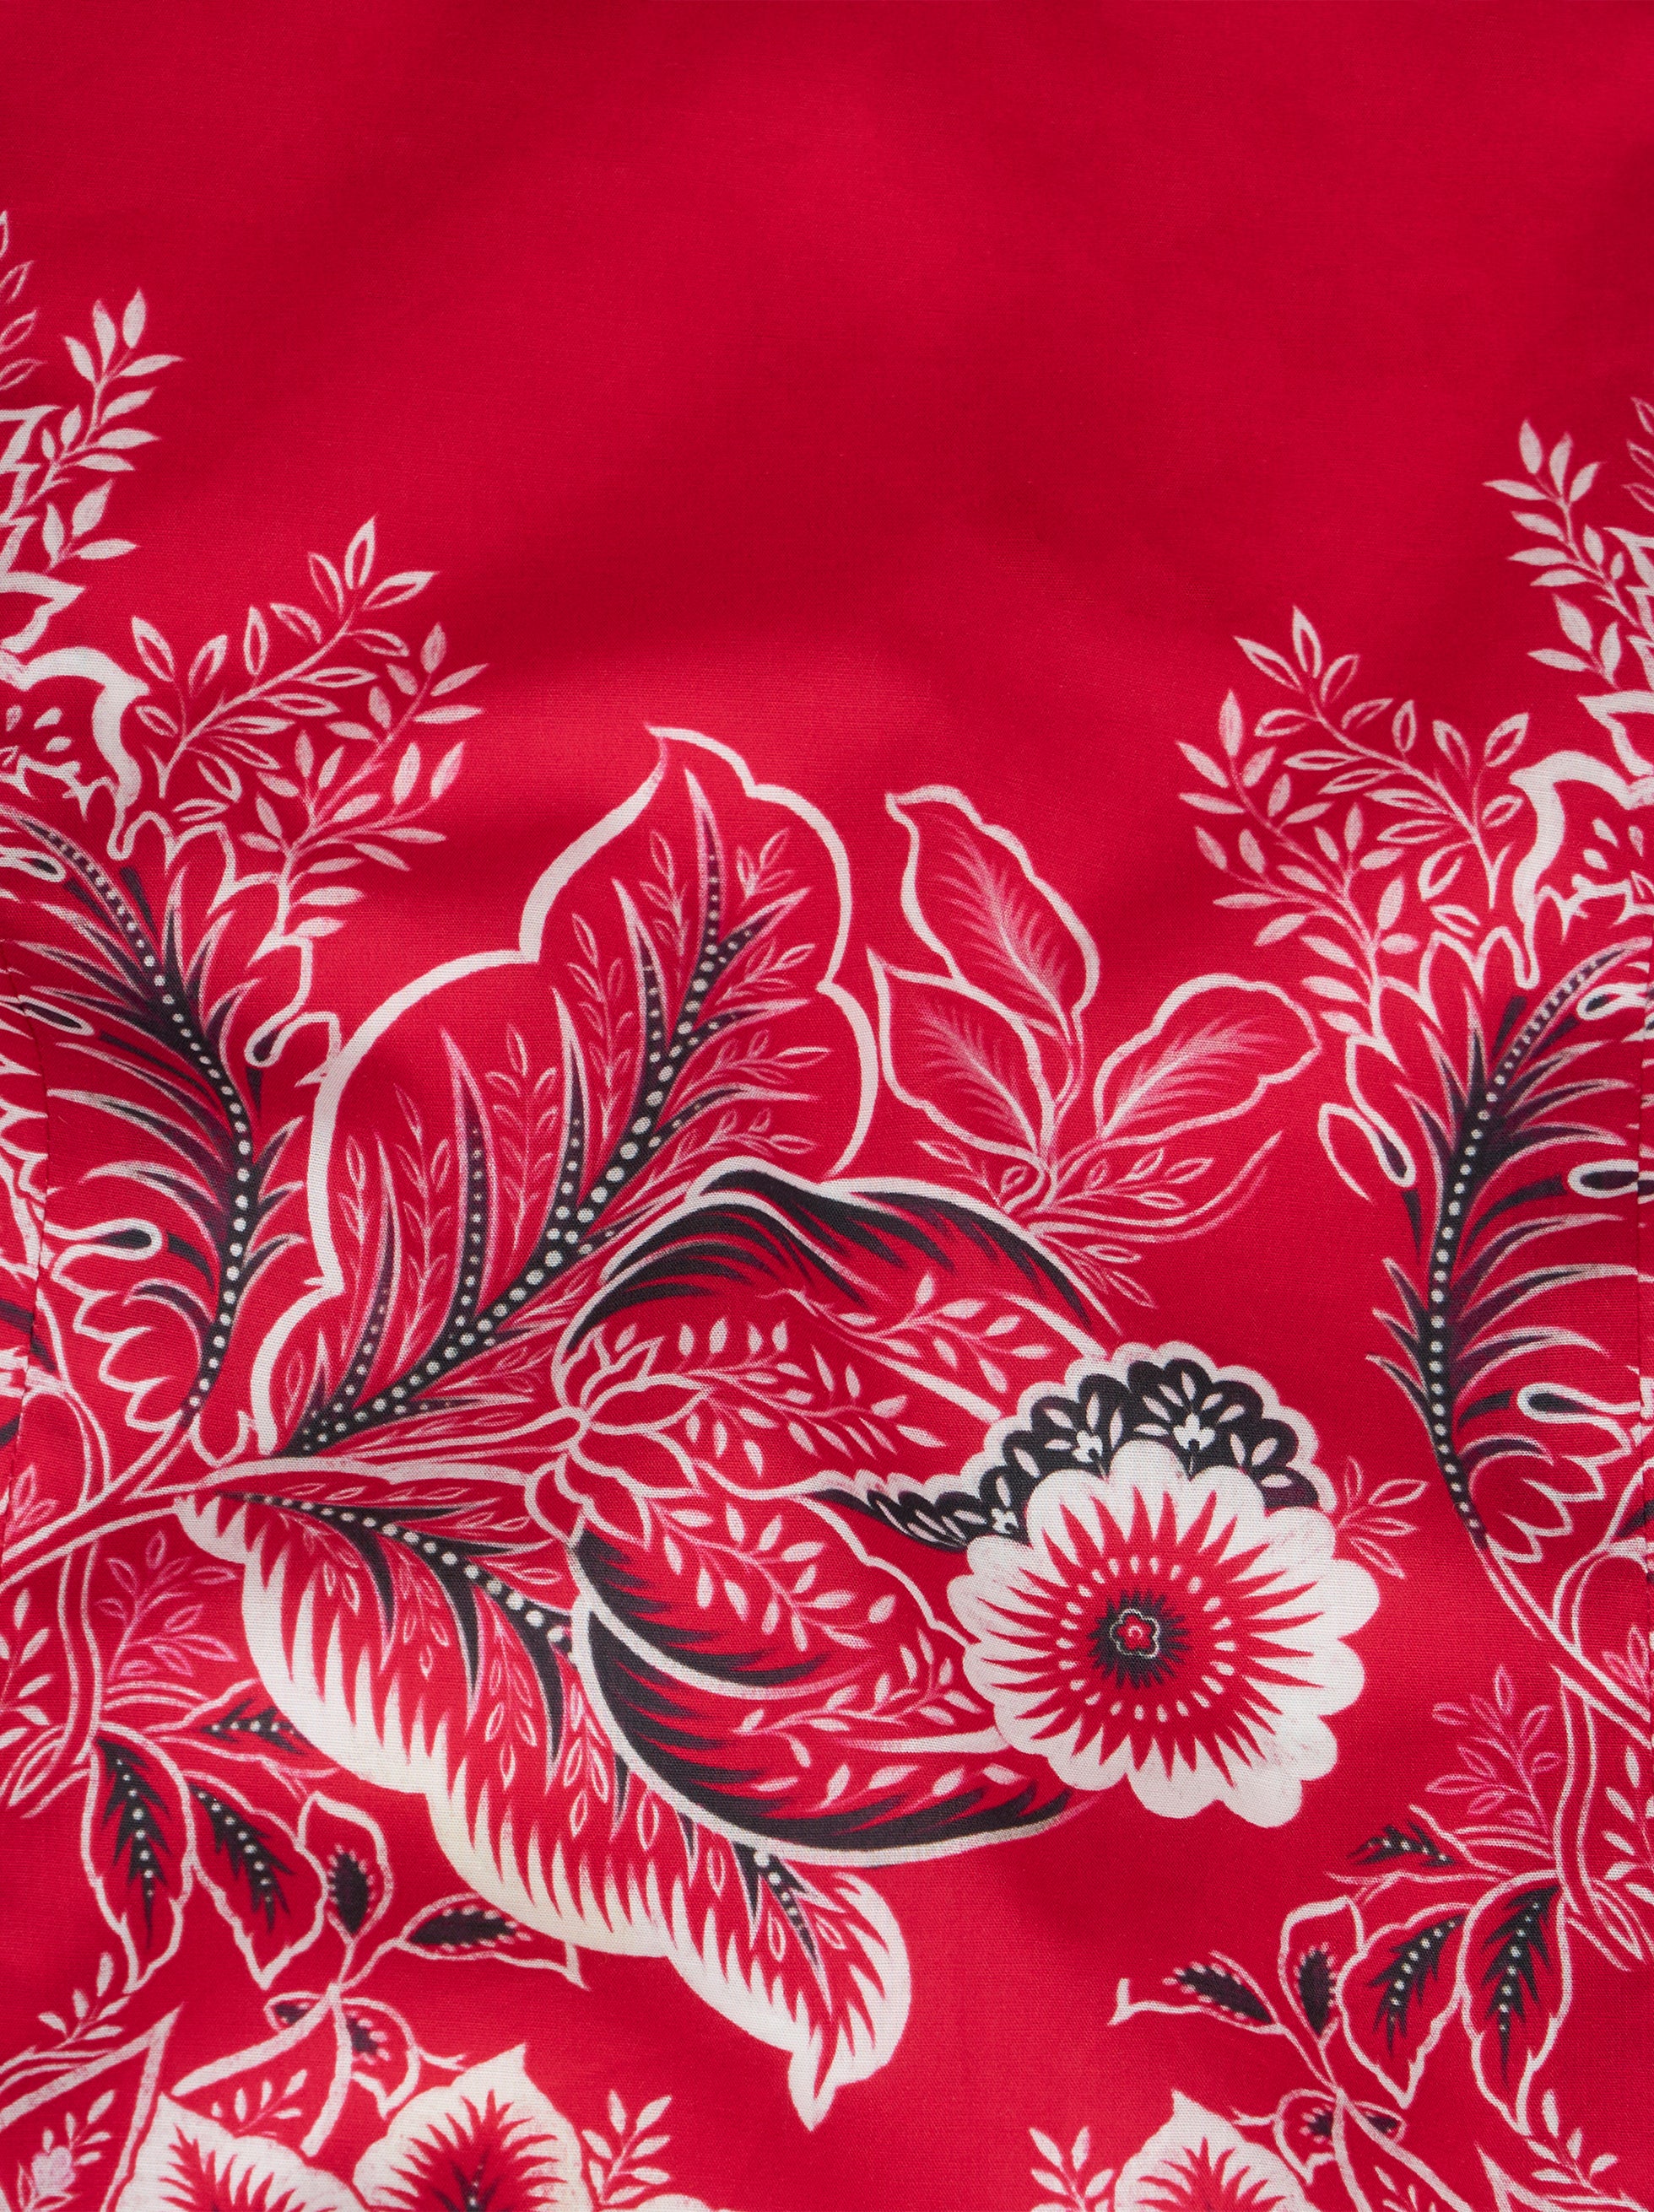 Camisa floral mescla de algodão - Etro